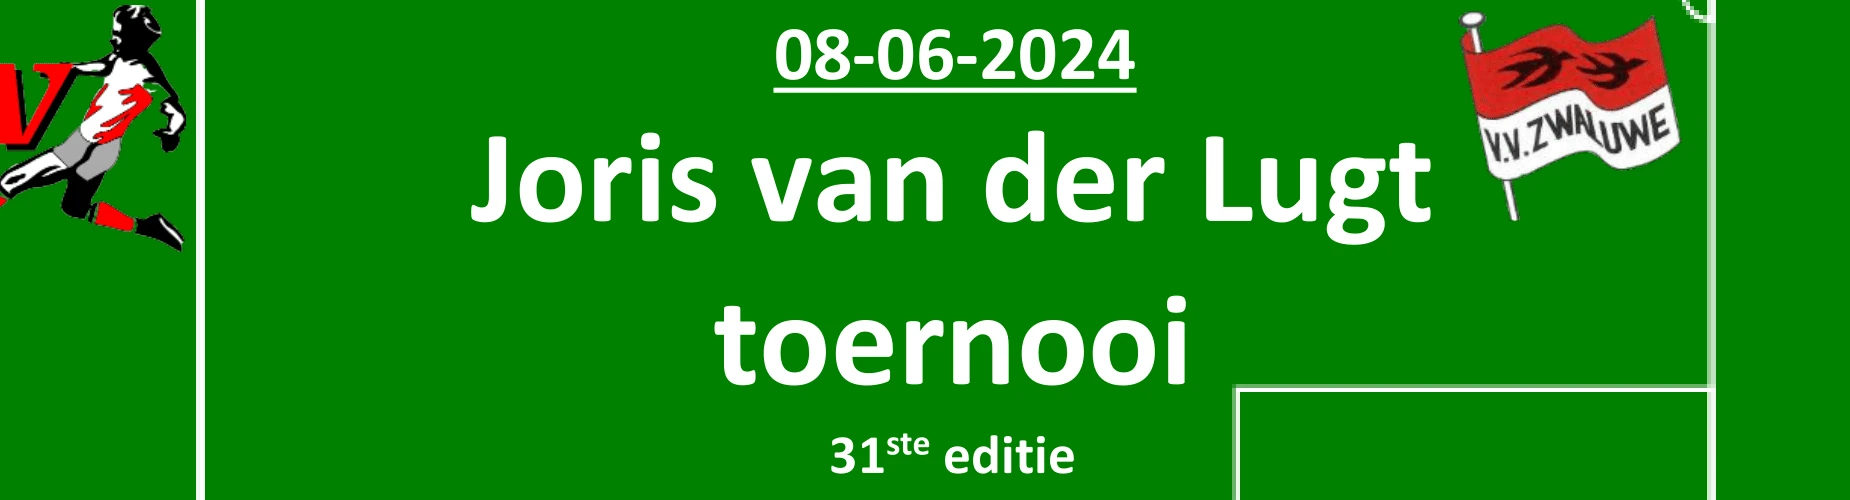 Banner - Joris van der Lugt Toernooi - vv Zwaluwe - Lage Zwaluwe